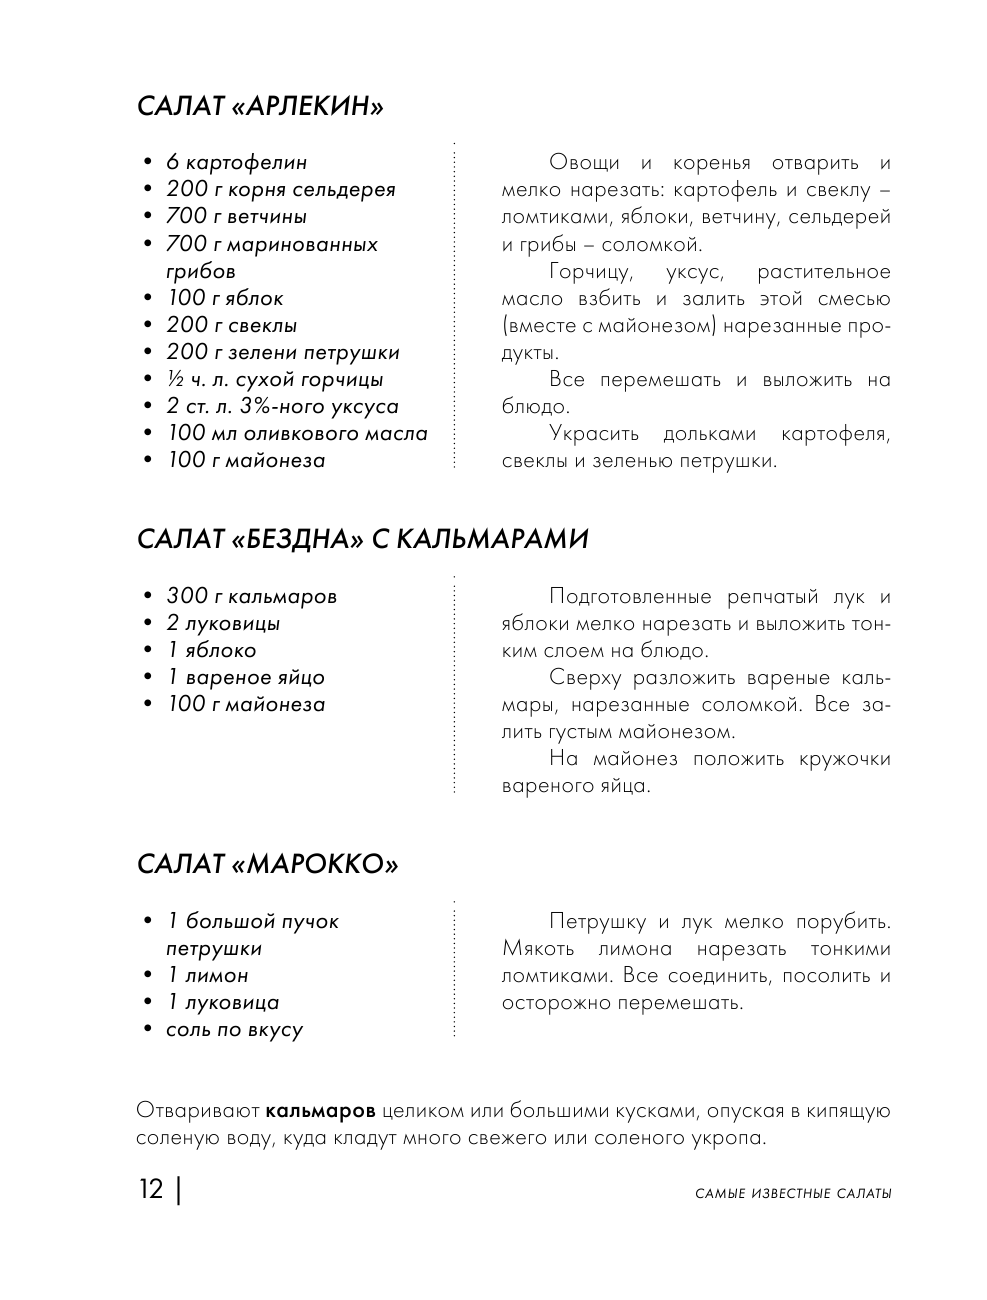 Энциклопедия салатов. Рецепты и рекомендации - фото №14